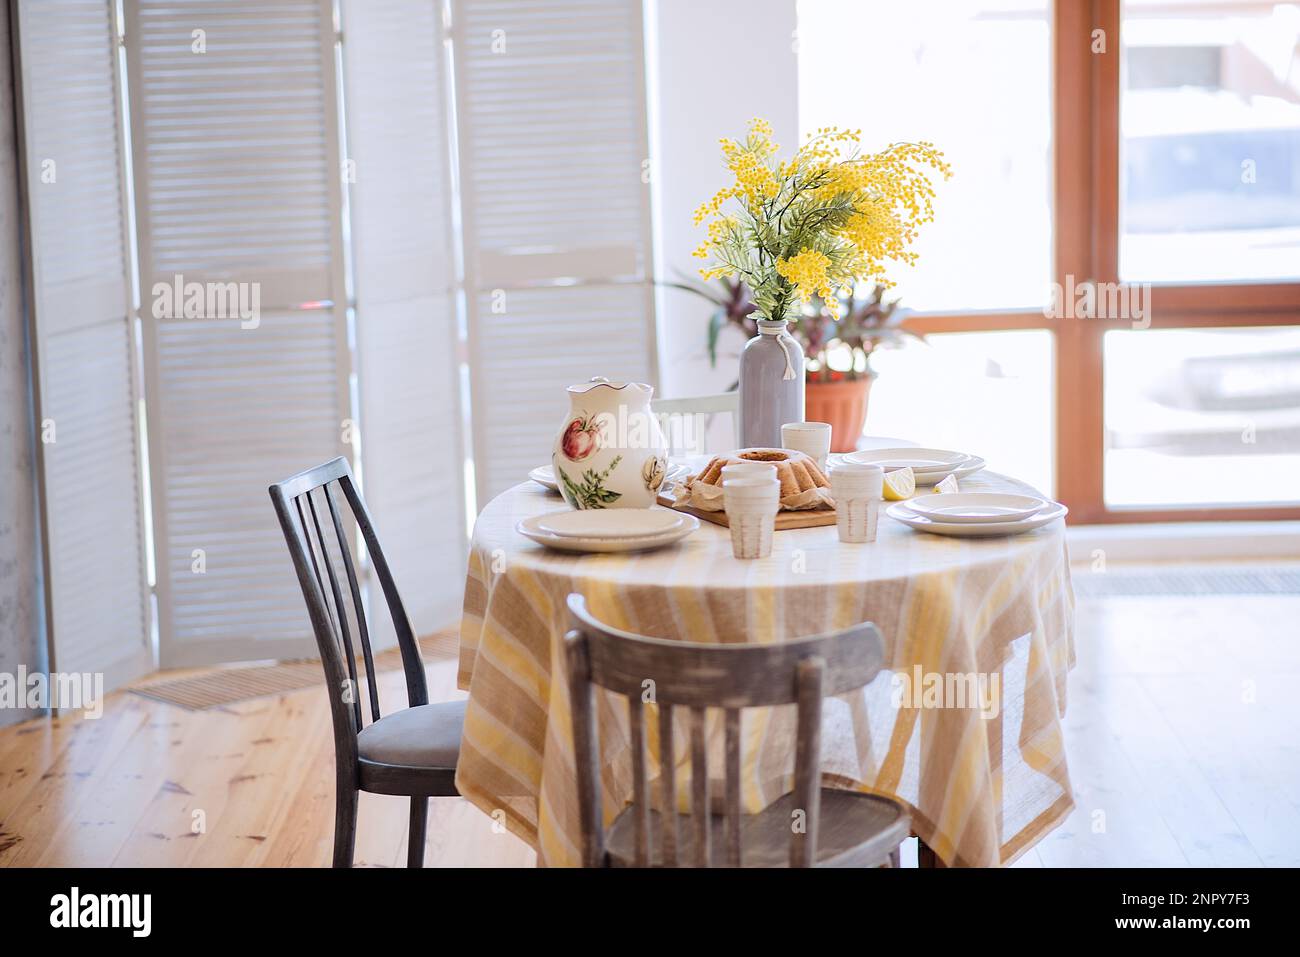 Primavera, Pasqua interni in stile scandinavo. Rustico soggiorno con un luminoso armadio, mimosa giallo in vaso. La tabella viene impostata in modo festivo con ceram Foto Stock